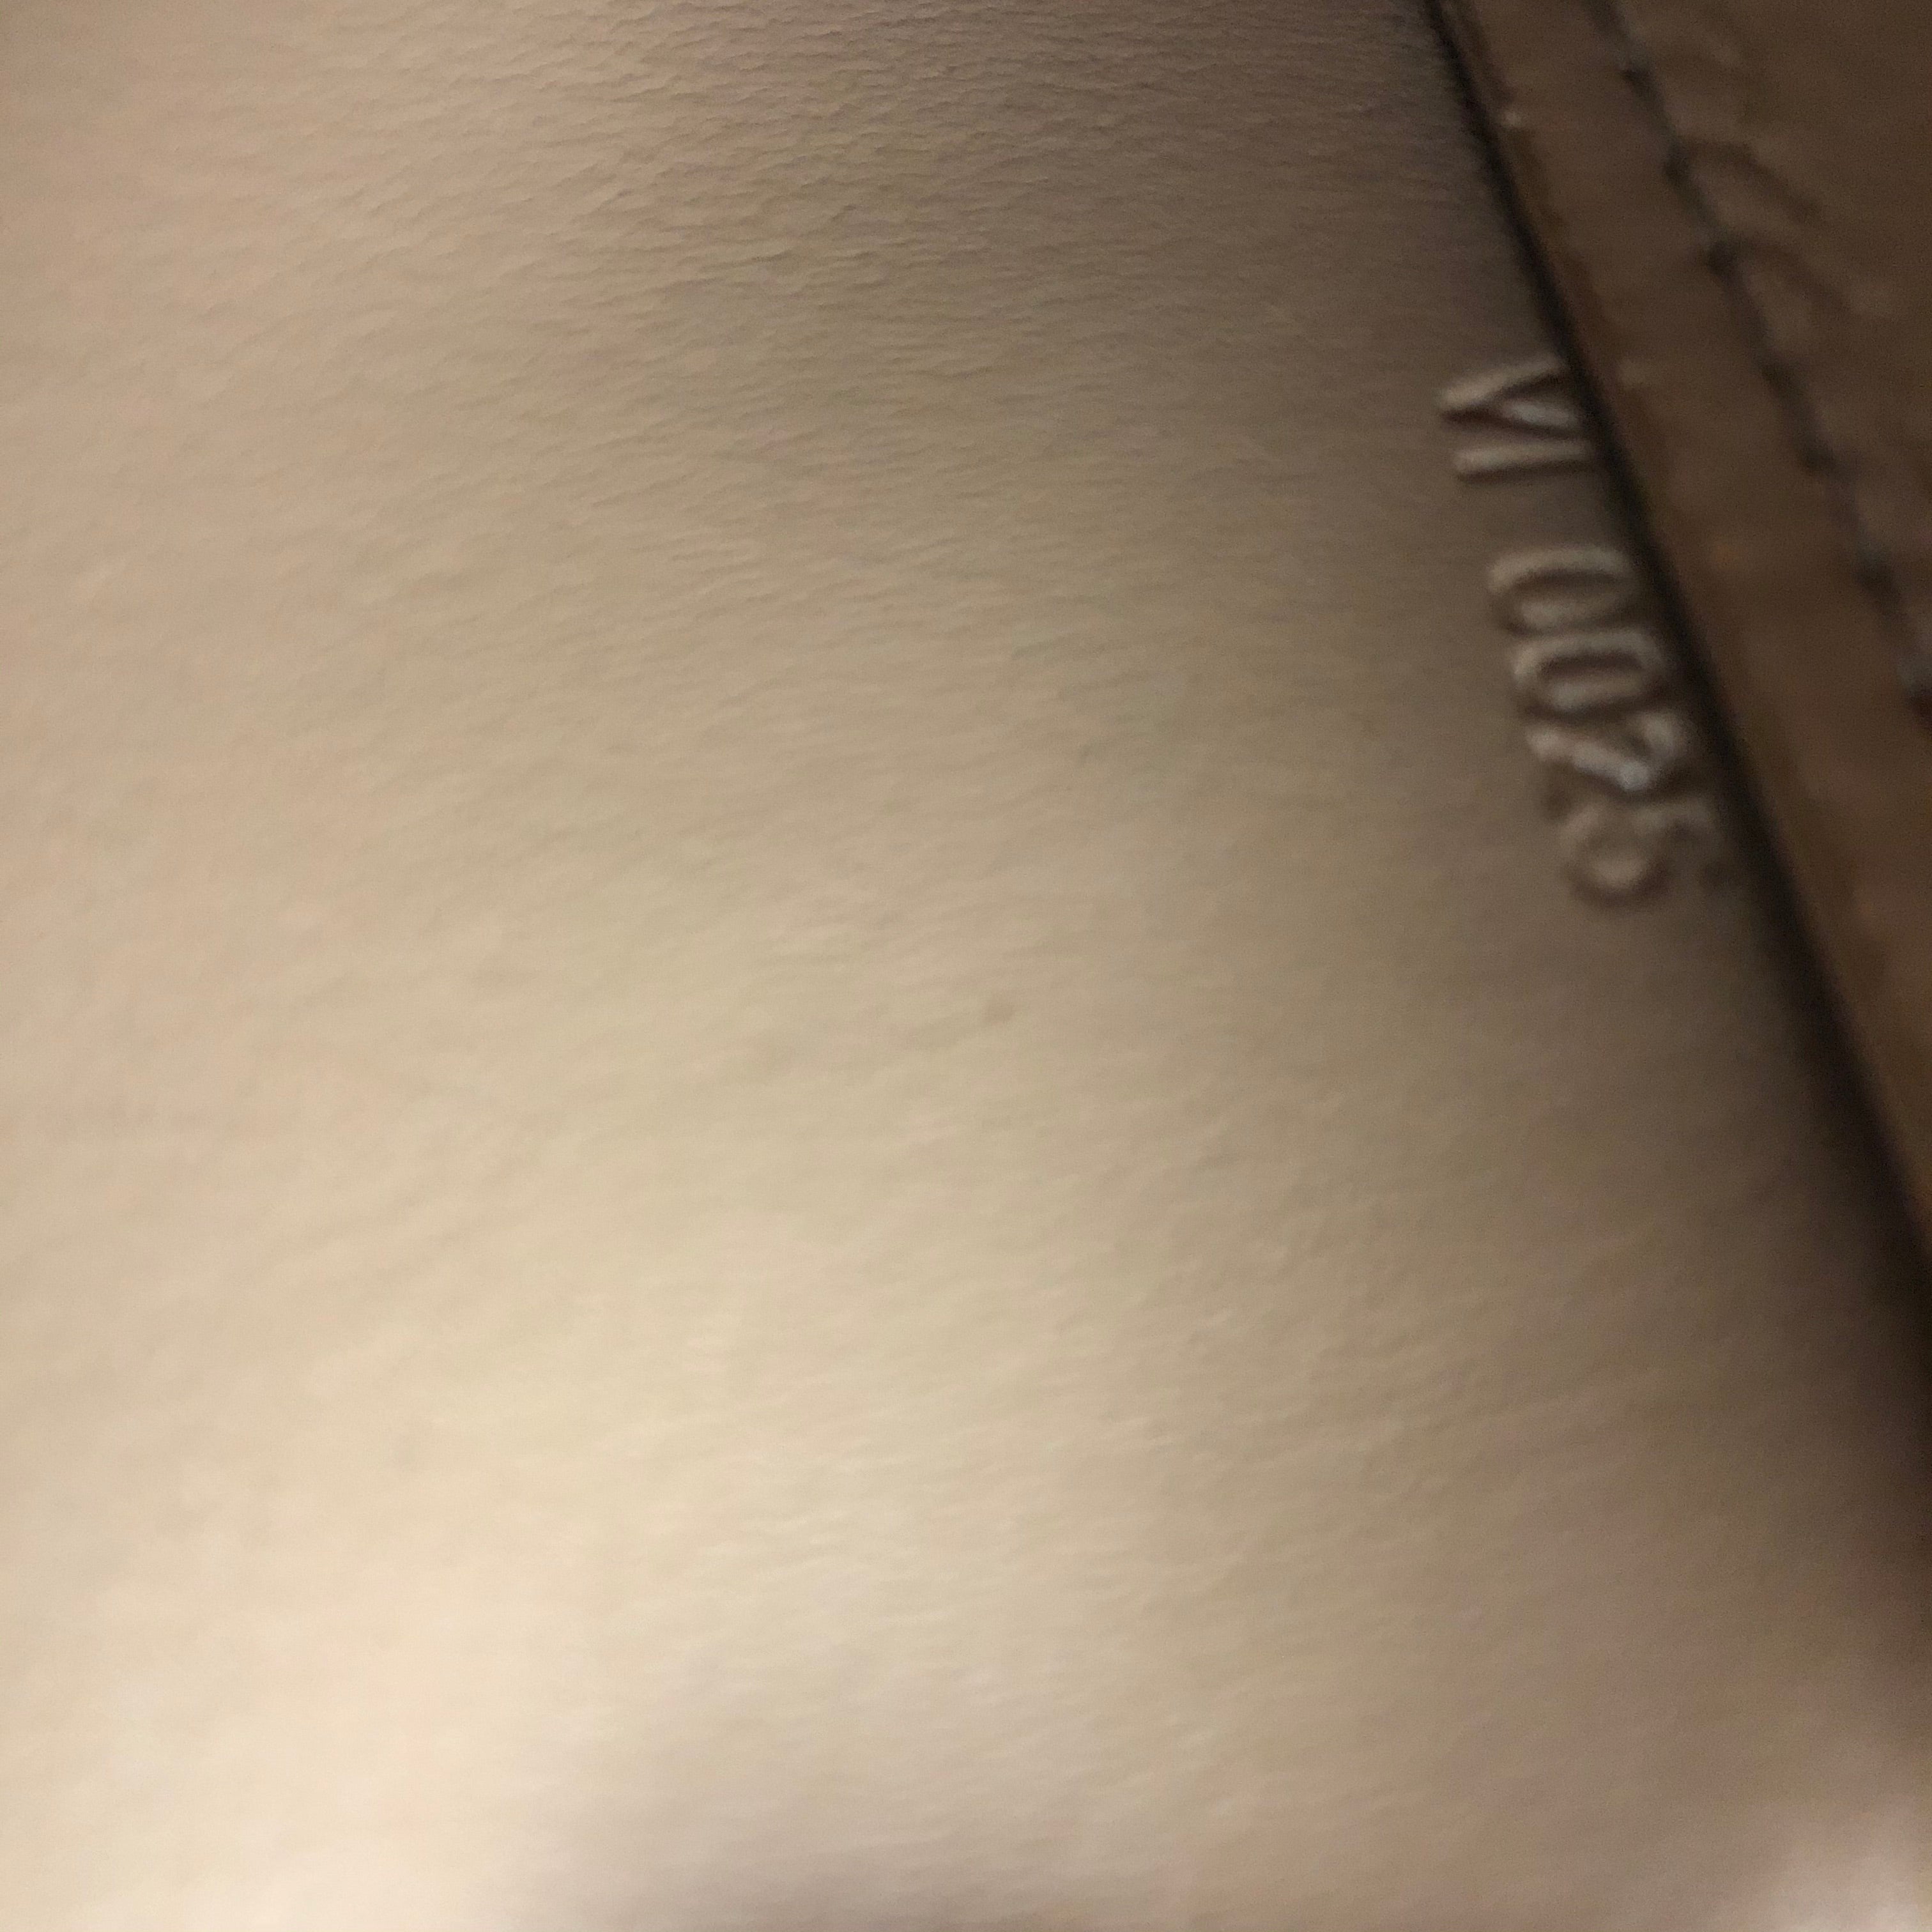 Louis Vuitton Lexington Pochette Shoulder Bag